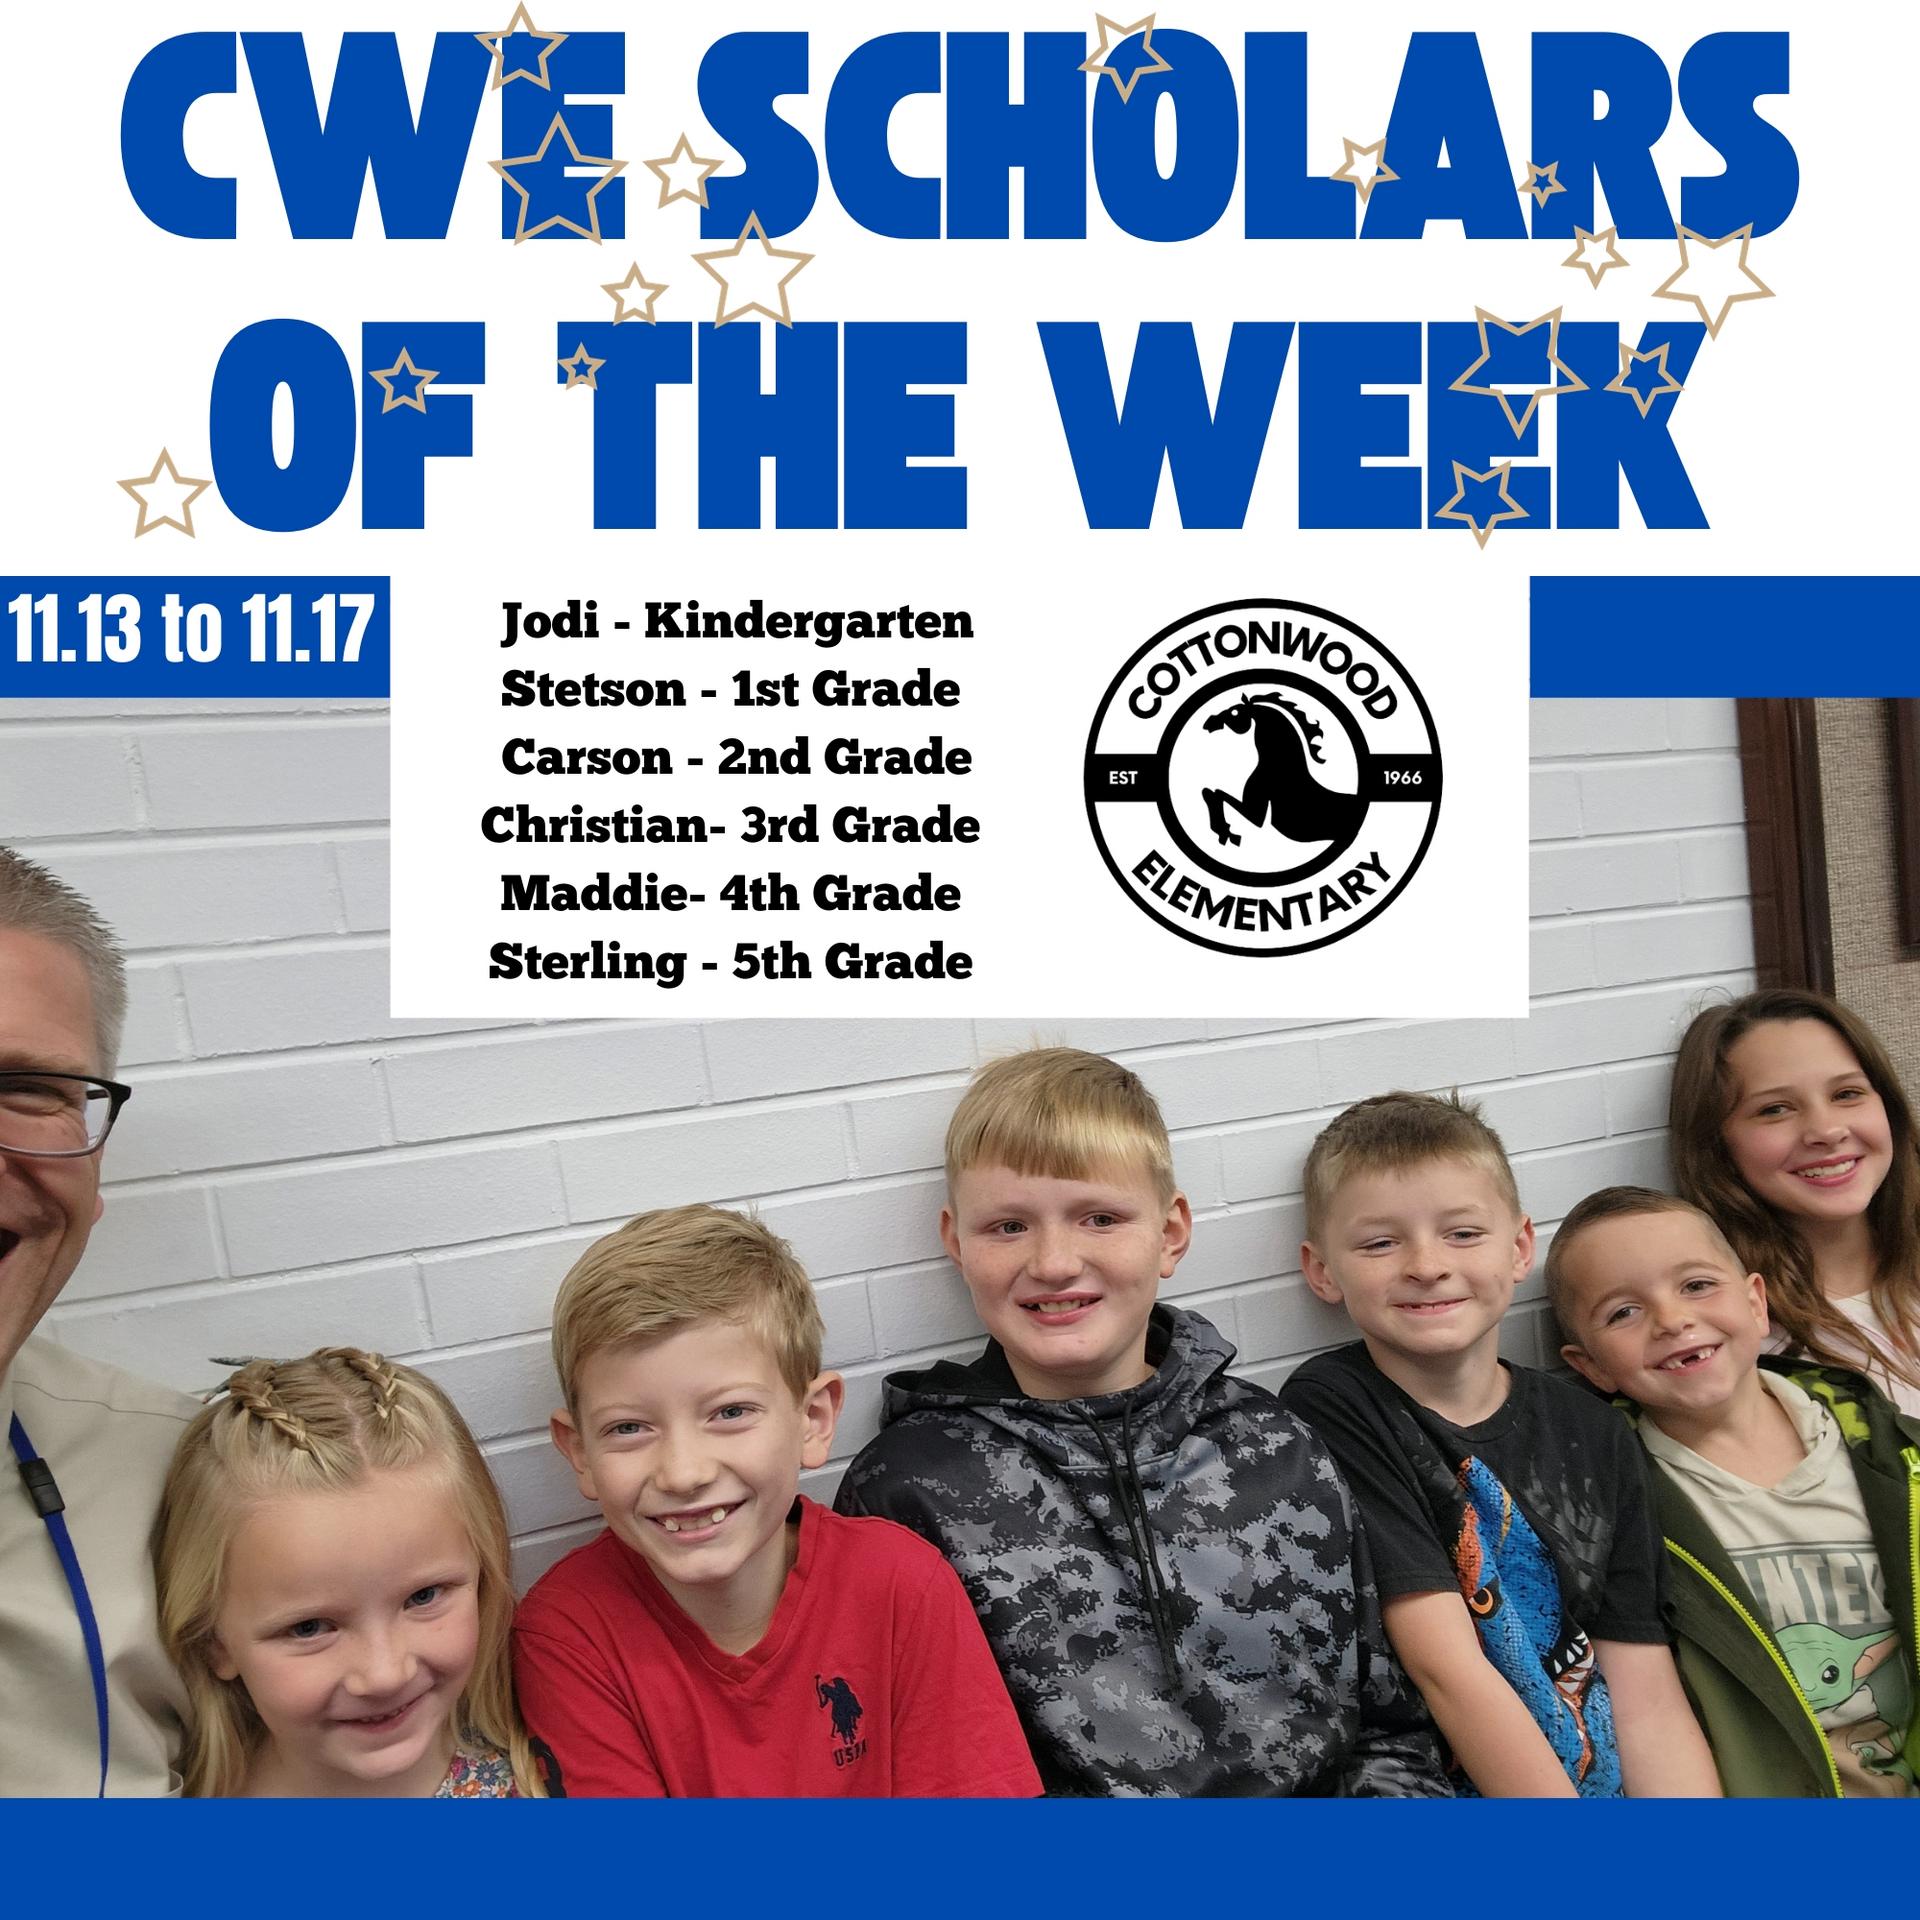 CWE-Scholars-of-the-Week-11.13-to-11.17.jpg